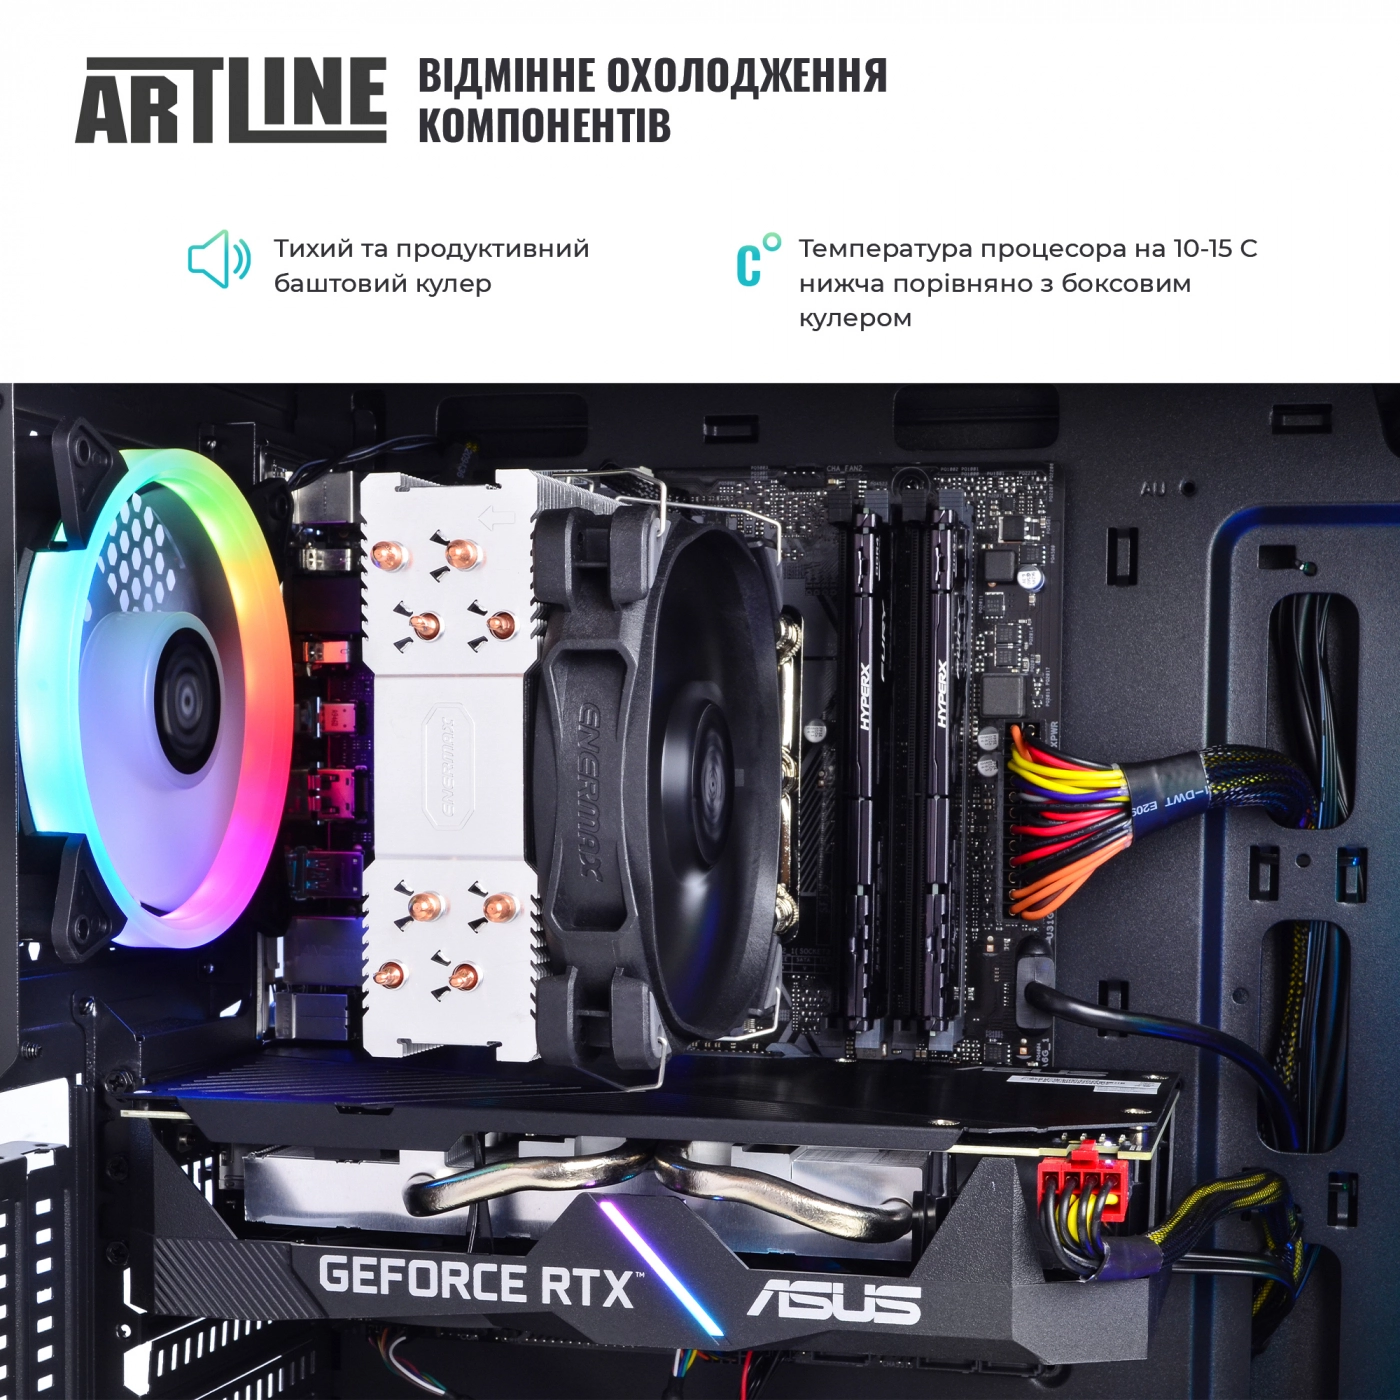 Купить Компьютер ARTLINE Gaming X90v14 - фото 5